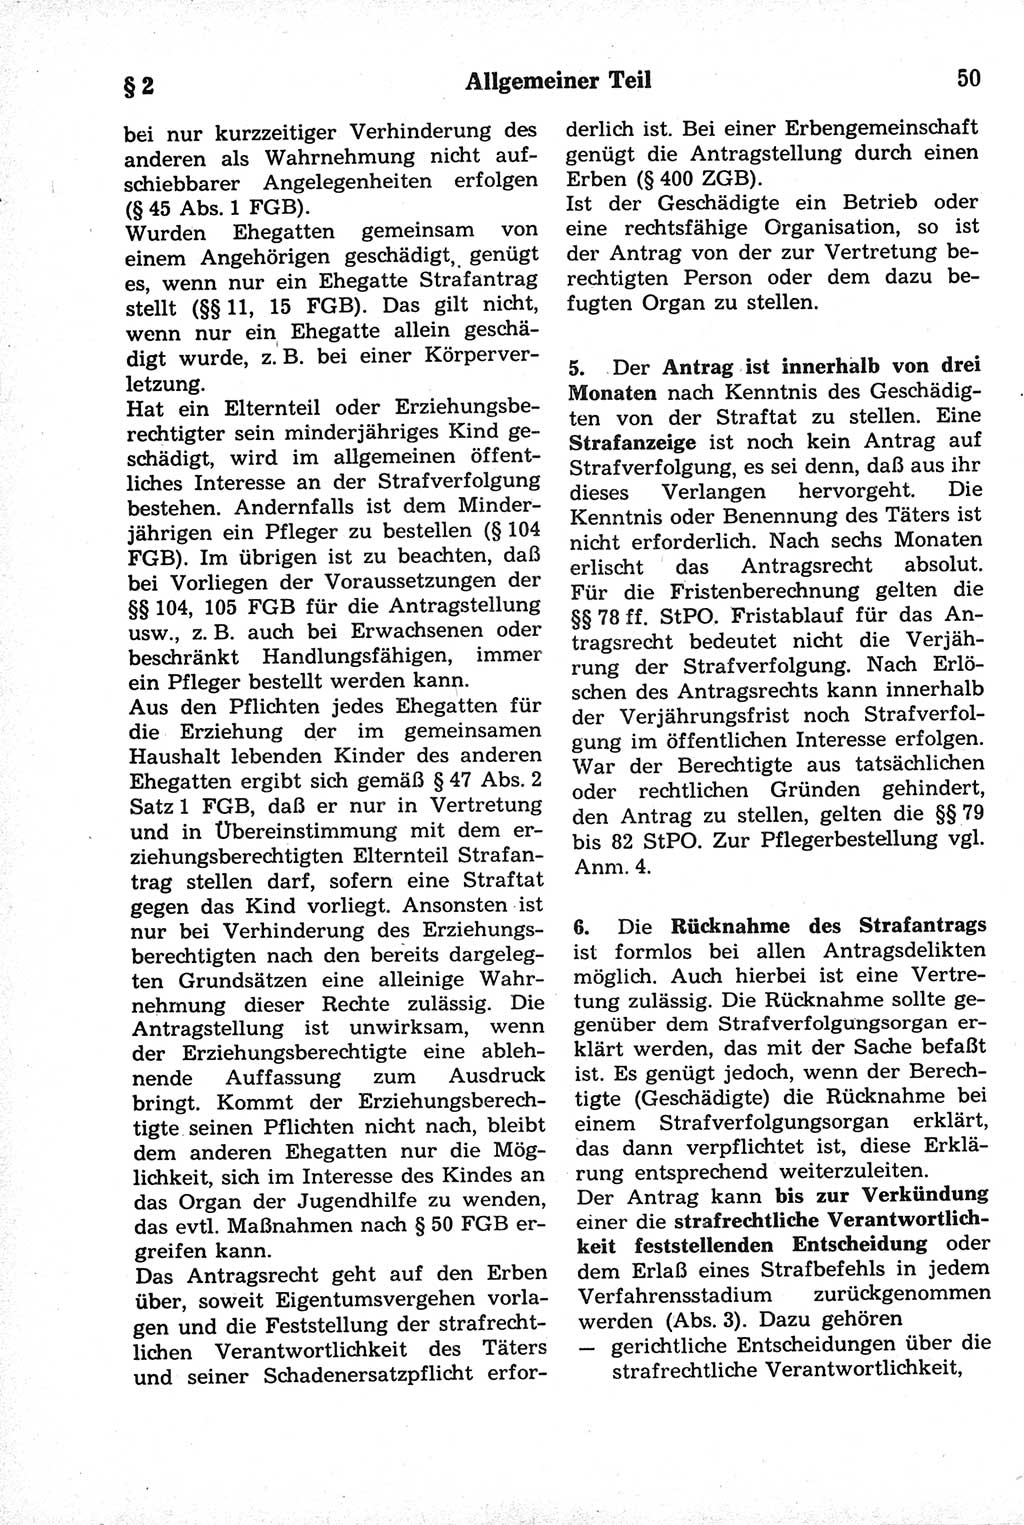 Strafrecht der Deutschen Demokratischen Republik (DDR), Kommentar zum Strafgesetzbuch (StGB) 1981, Seite 50 (Strafr. DDR Komm. StGB 1981, S. 50)